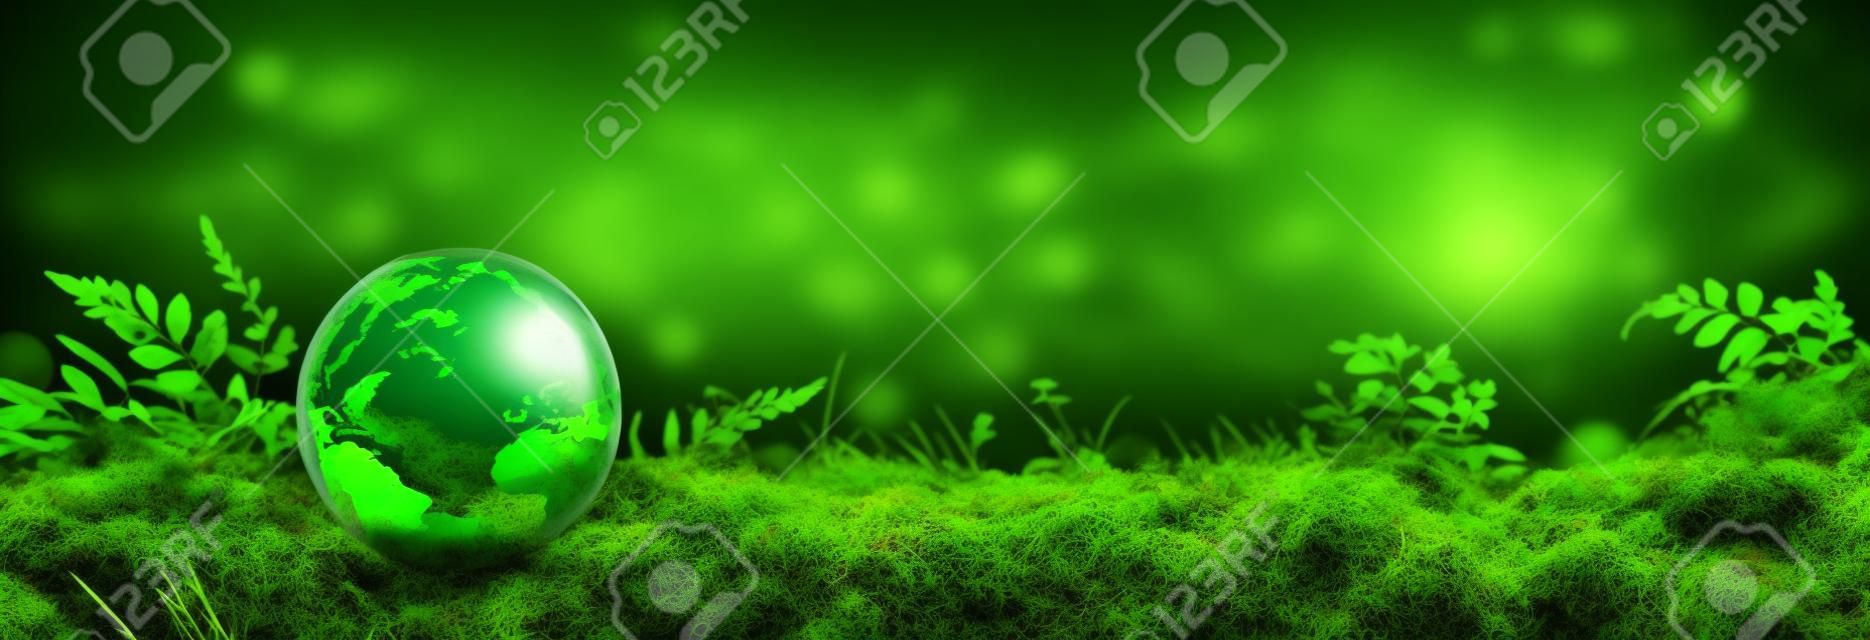 綠色環球苔蘚 - 環保概念